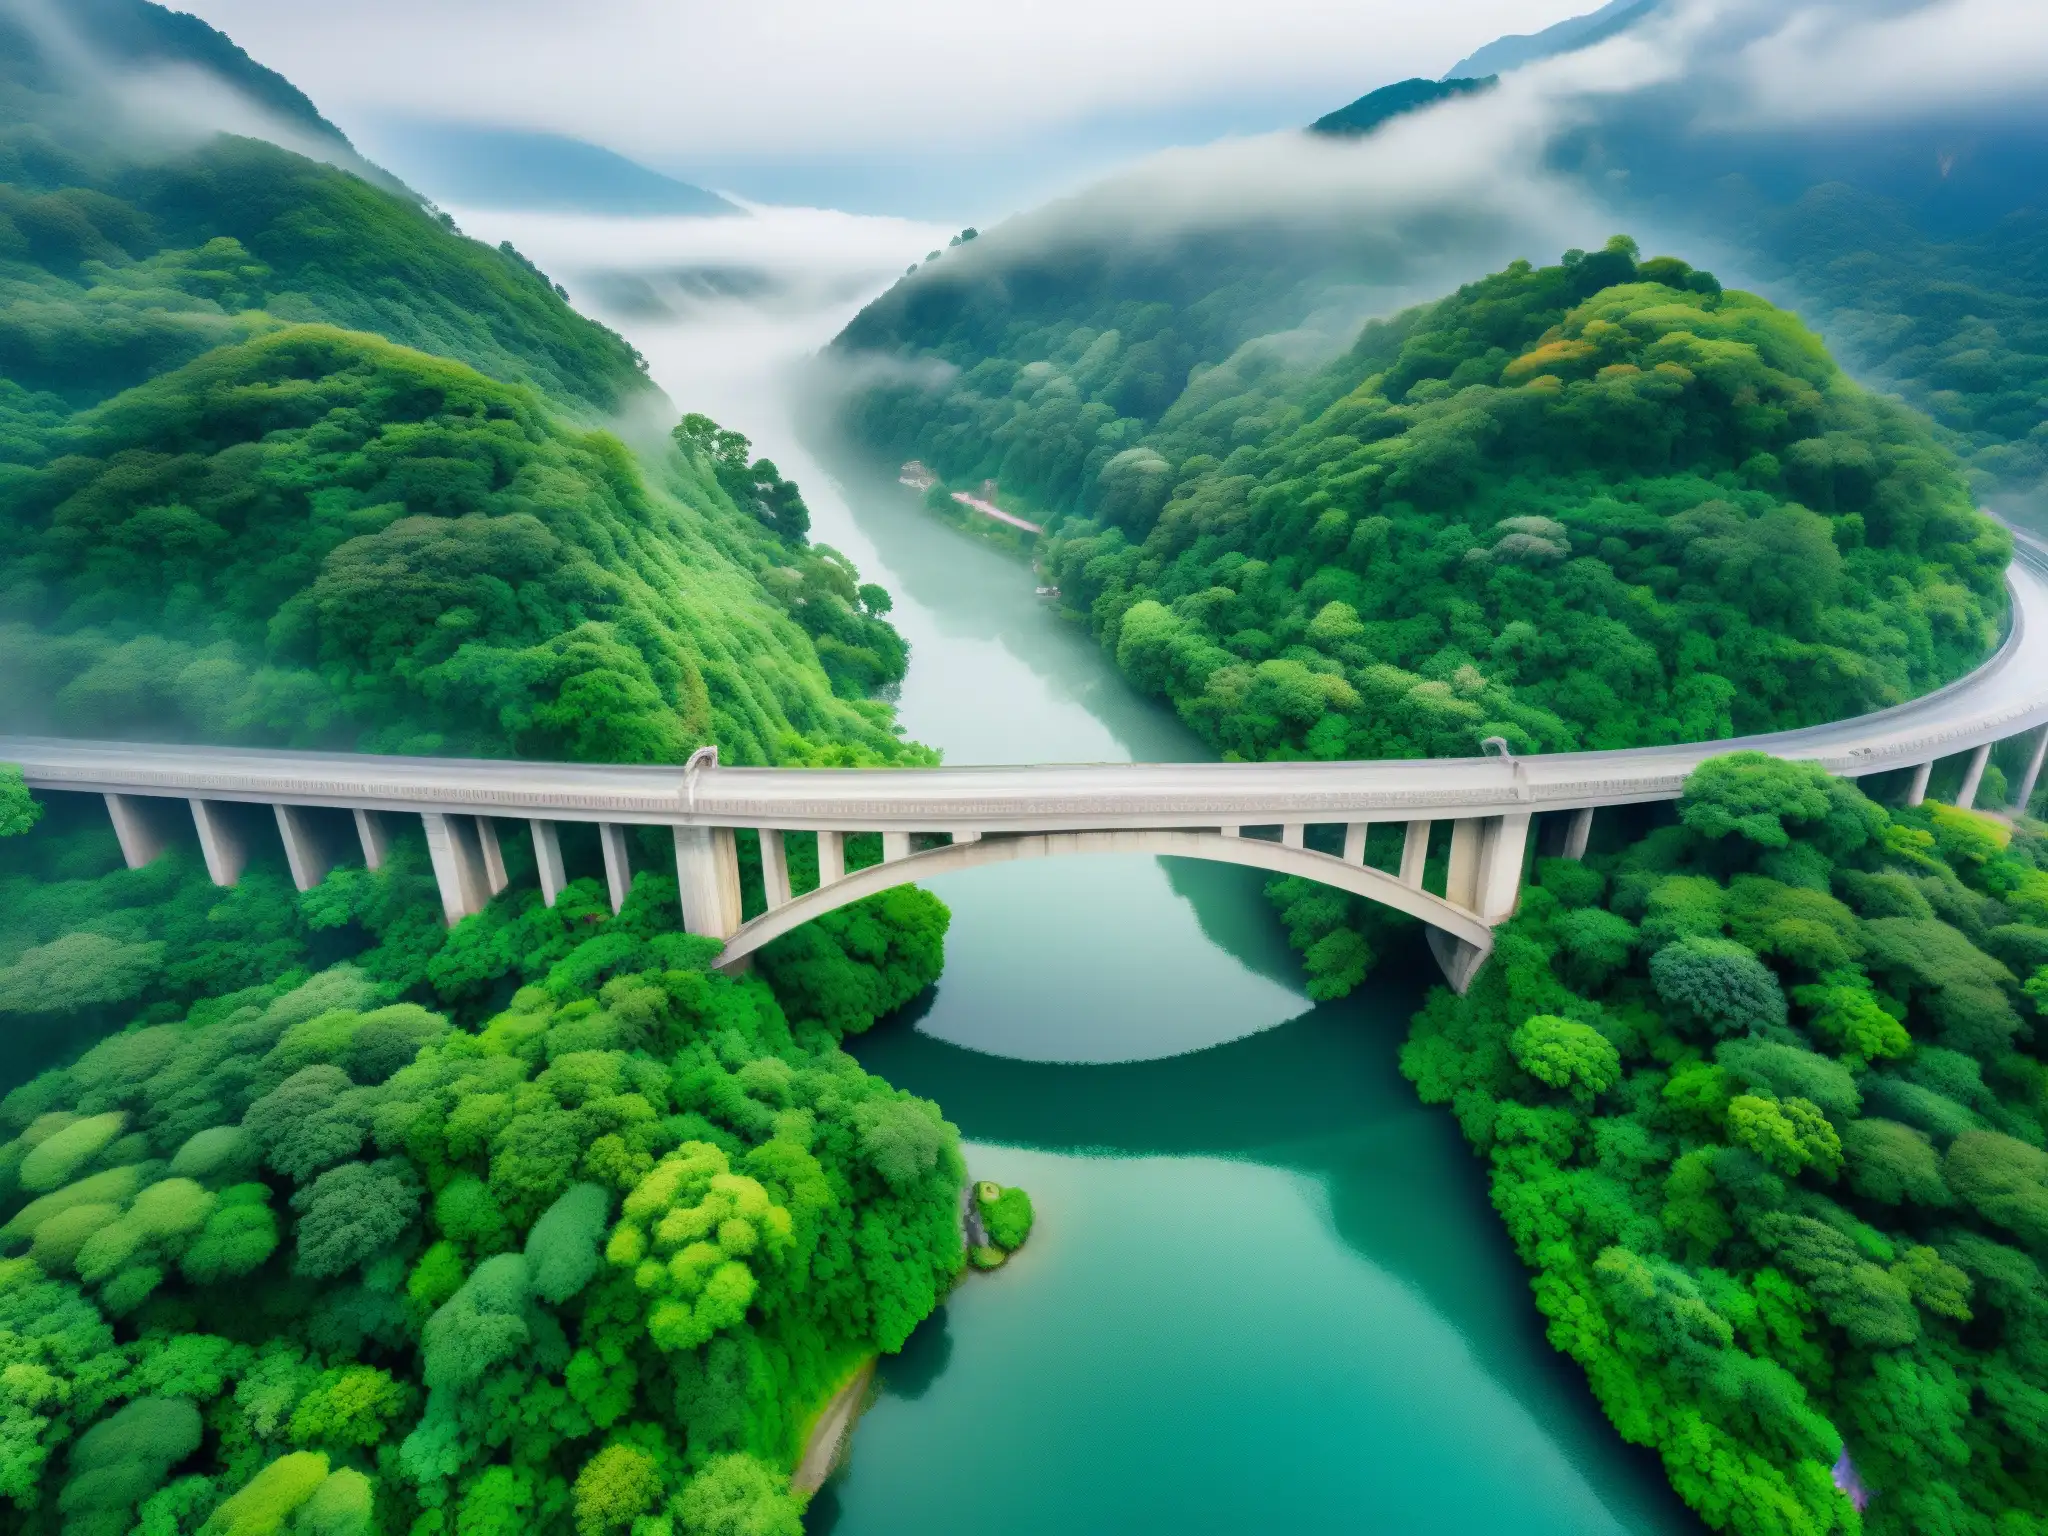 El misterioso puente de Saruhashi emerge entre la neblina, rodeado de exuberante vegetación y atravesando aguas cristalinas